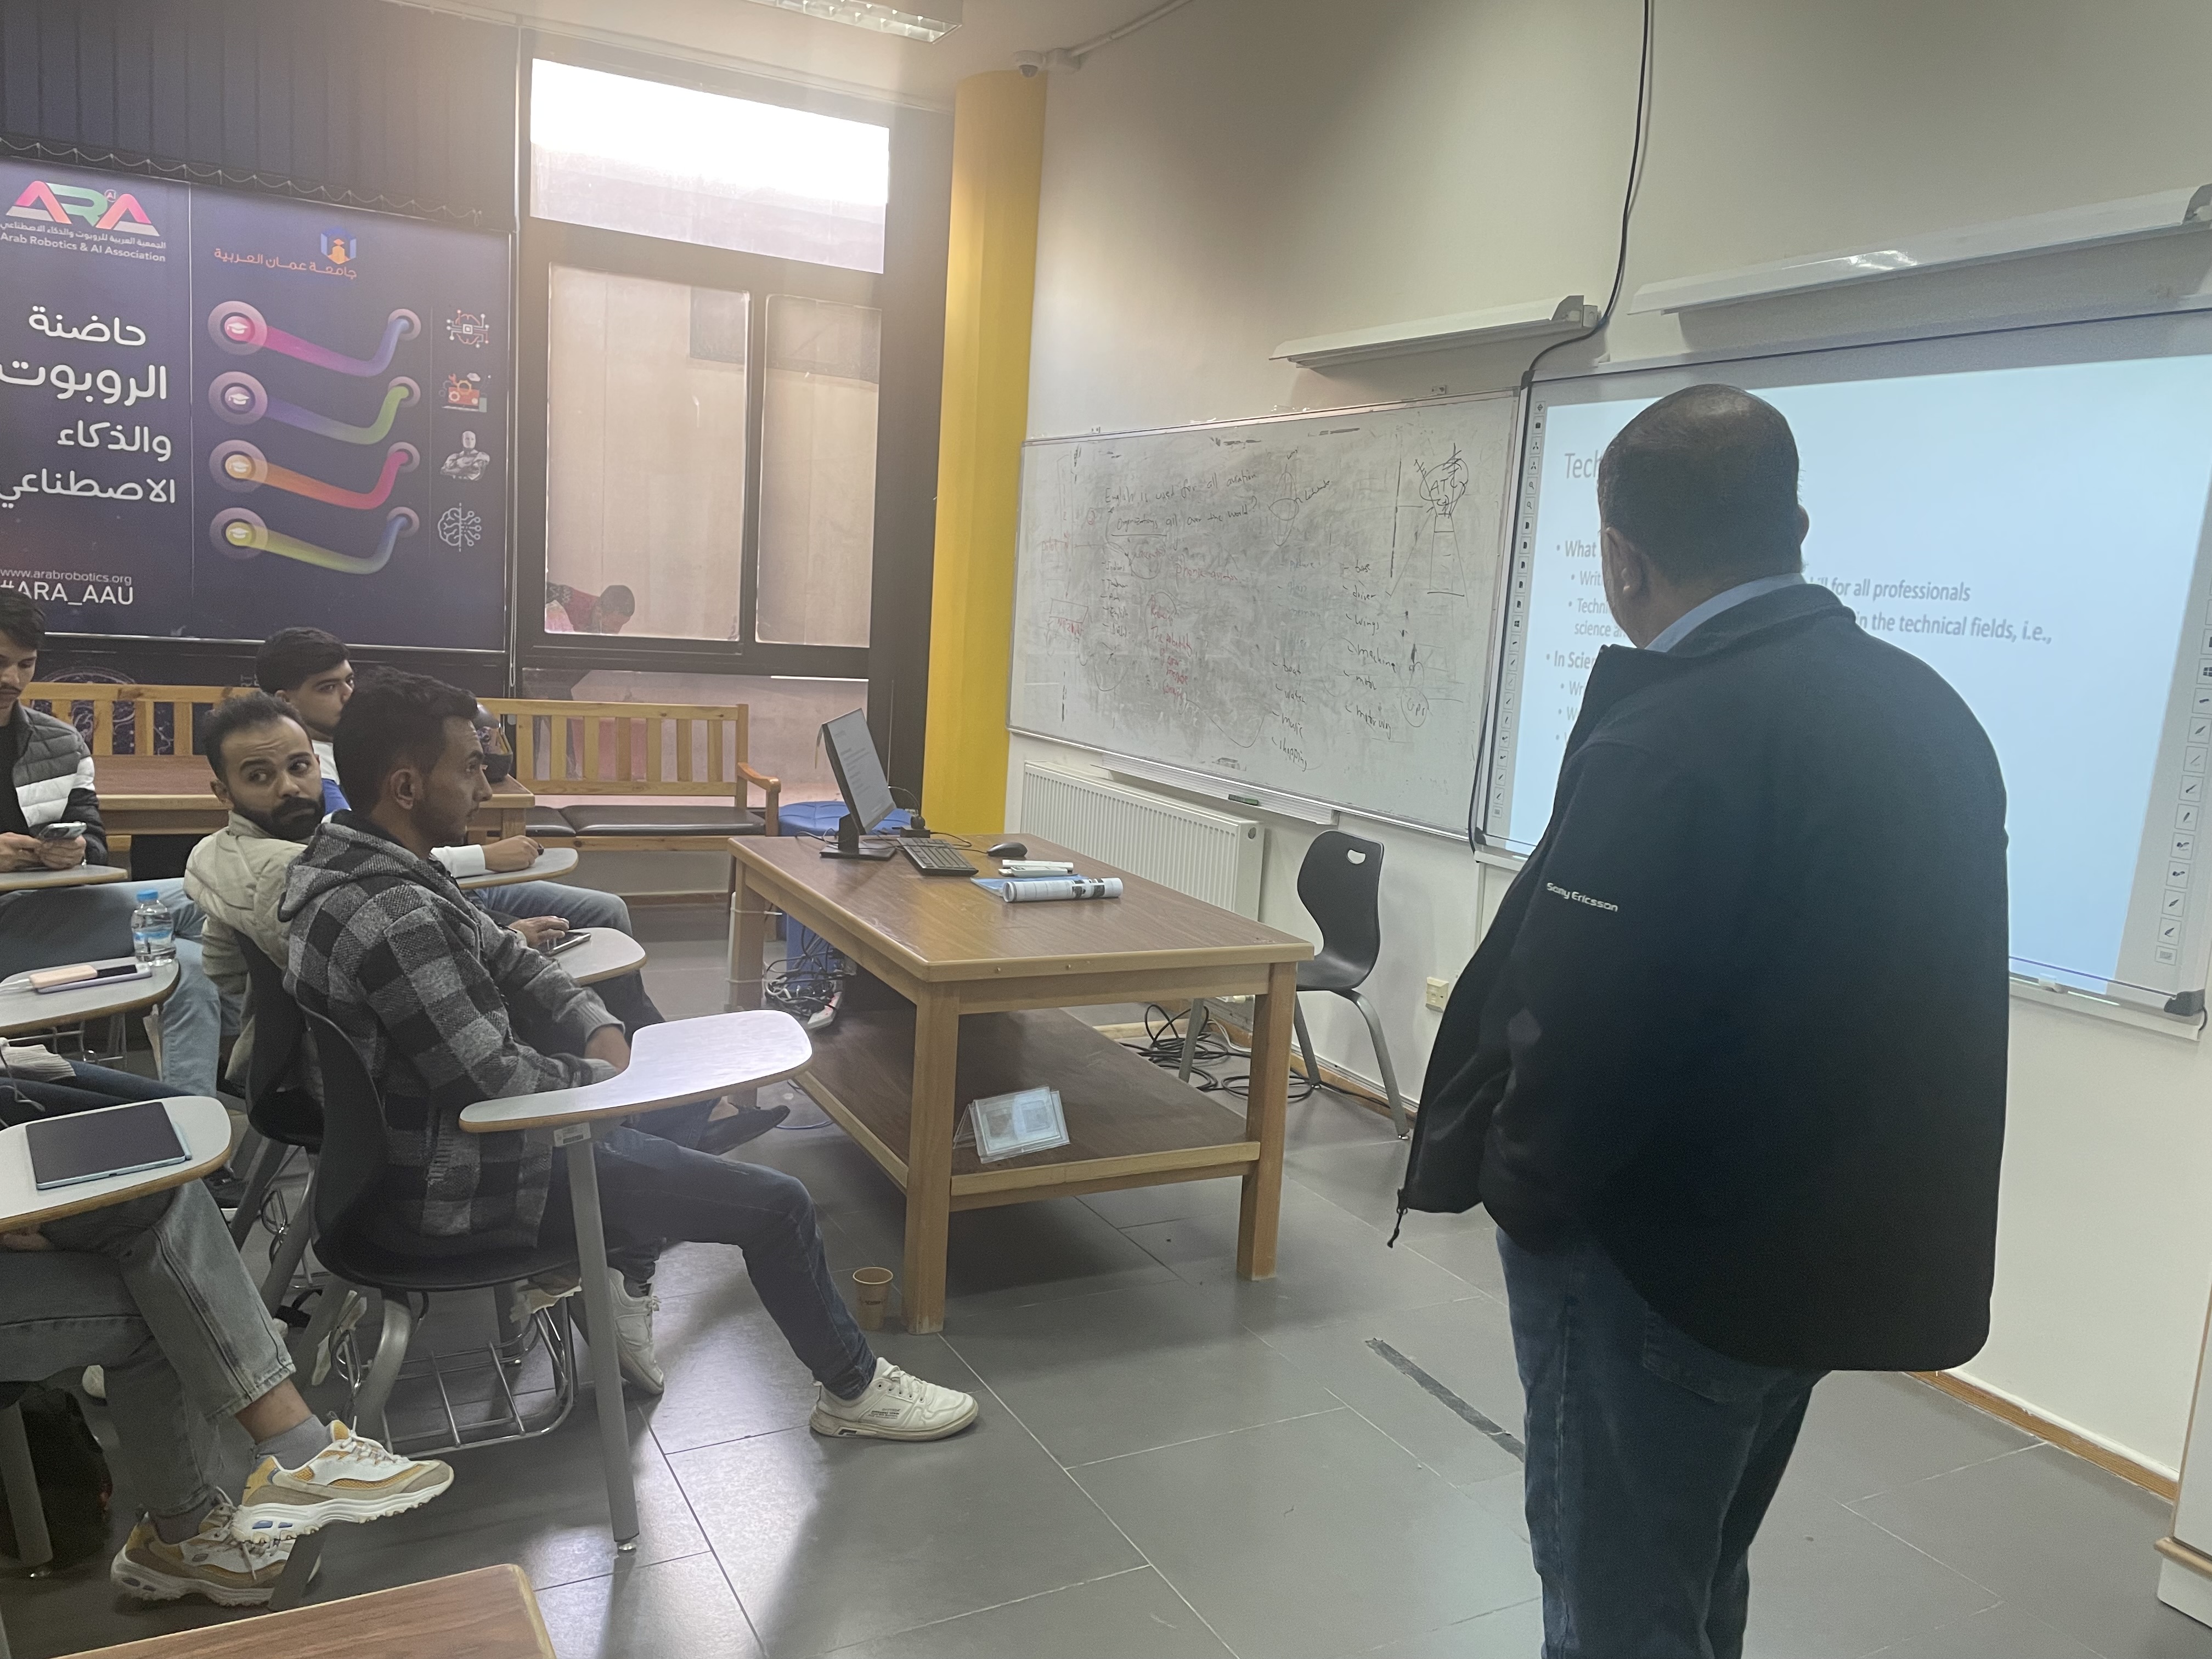 دورة تدريبية في جامعة عمان العربية بعنوان Technical Writing1